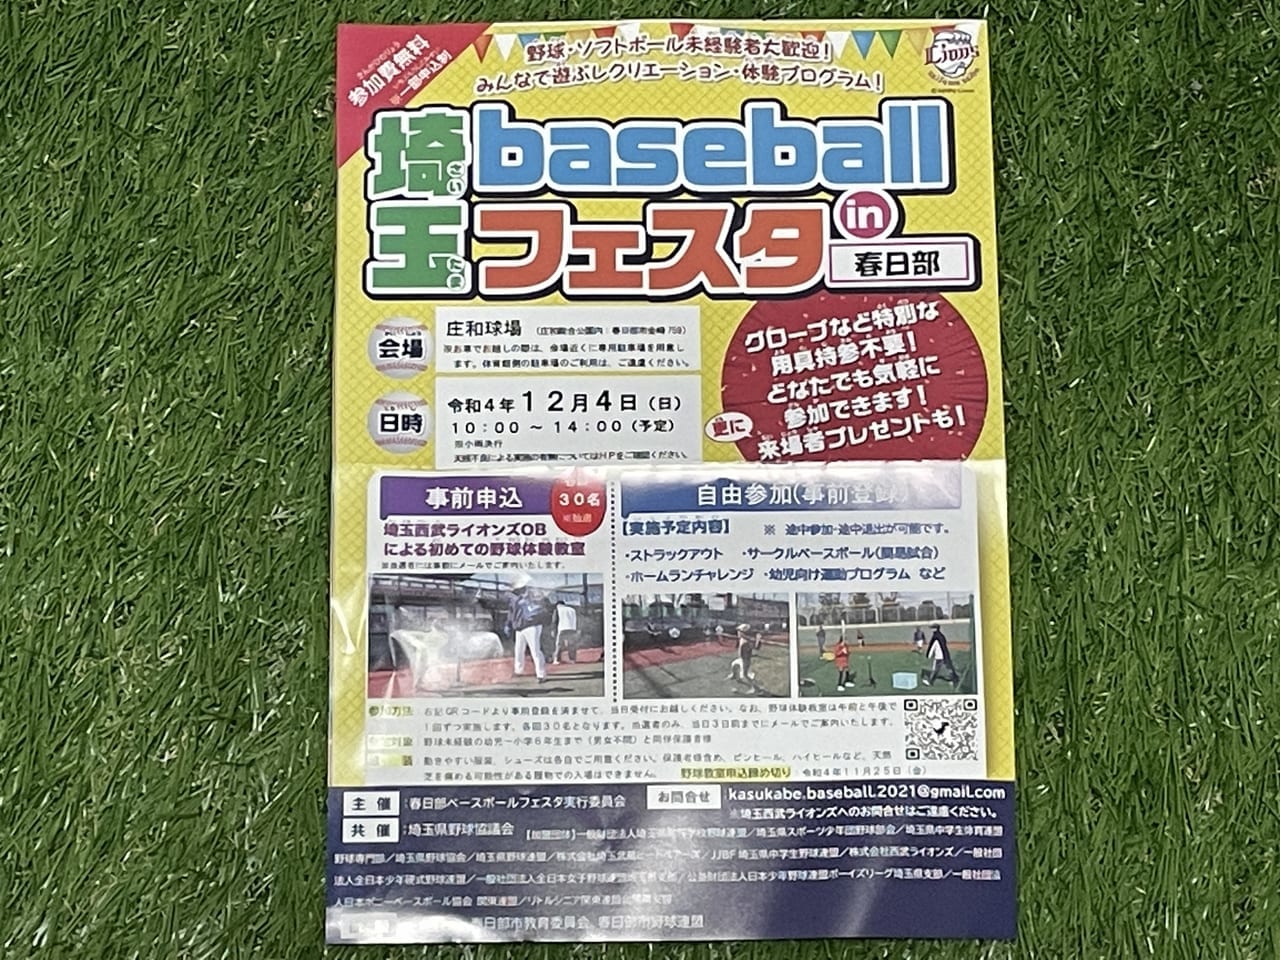 埼玉baseballフェスタ